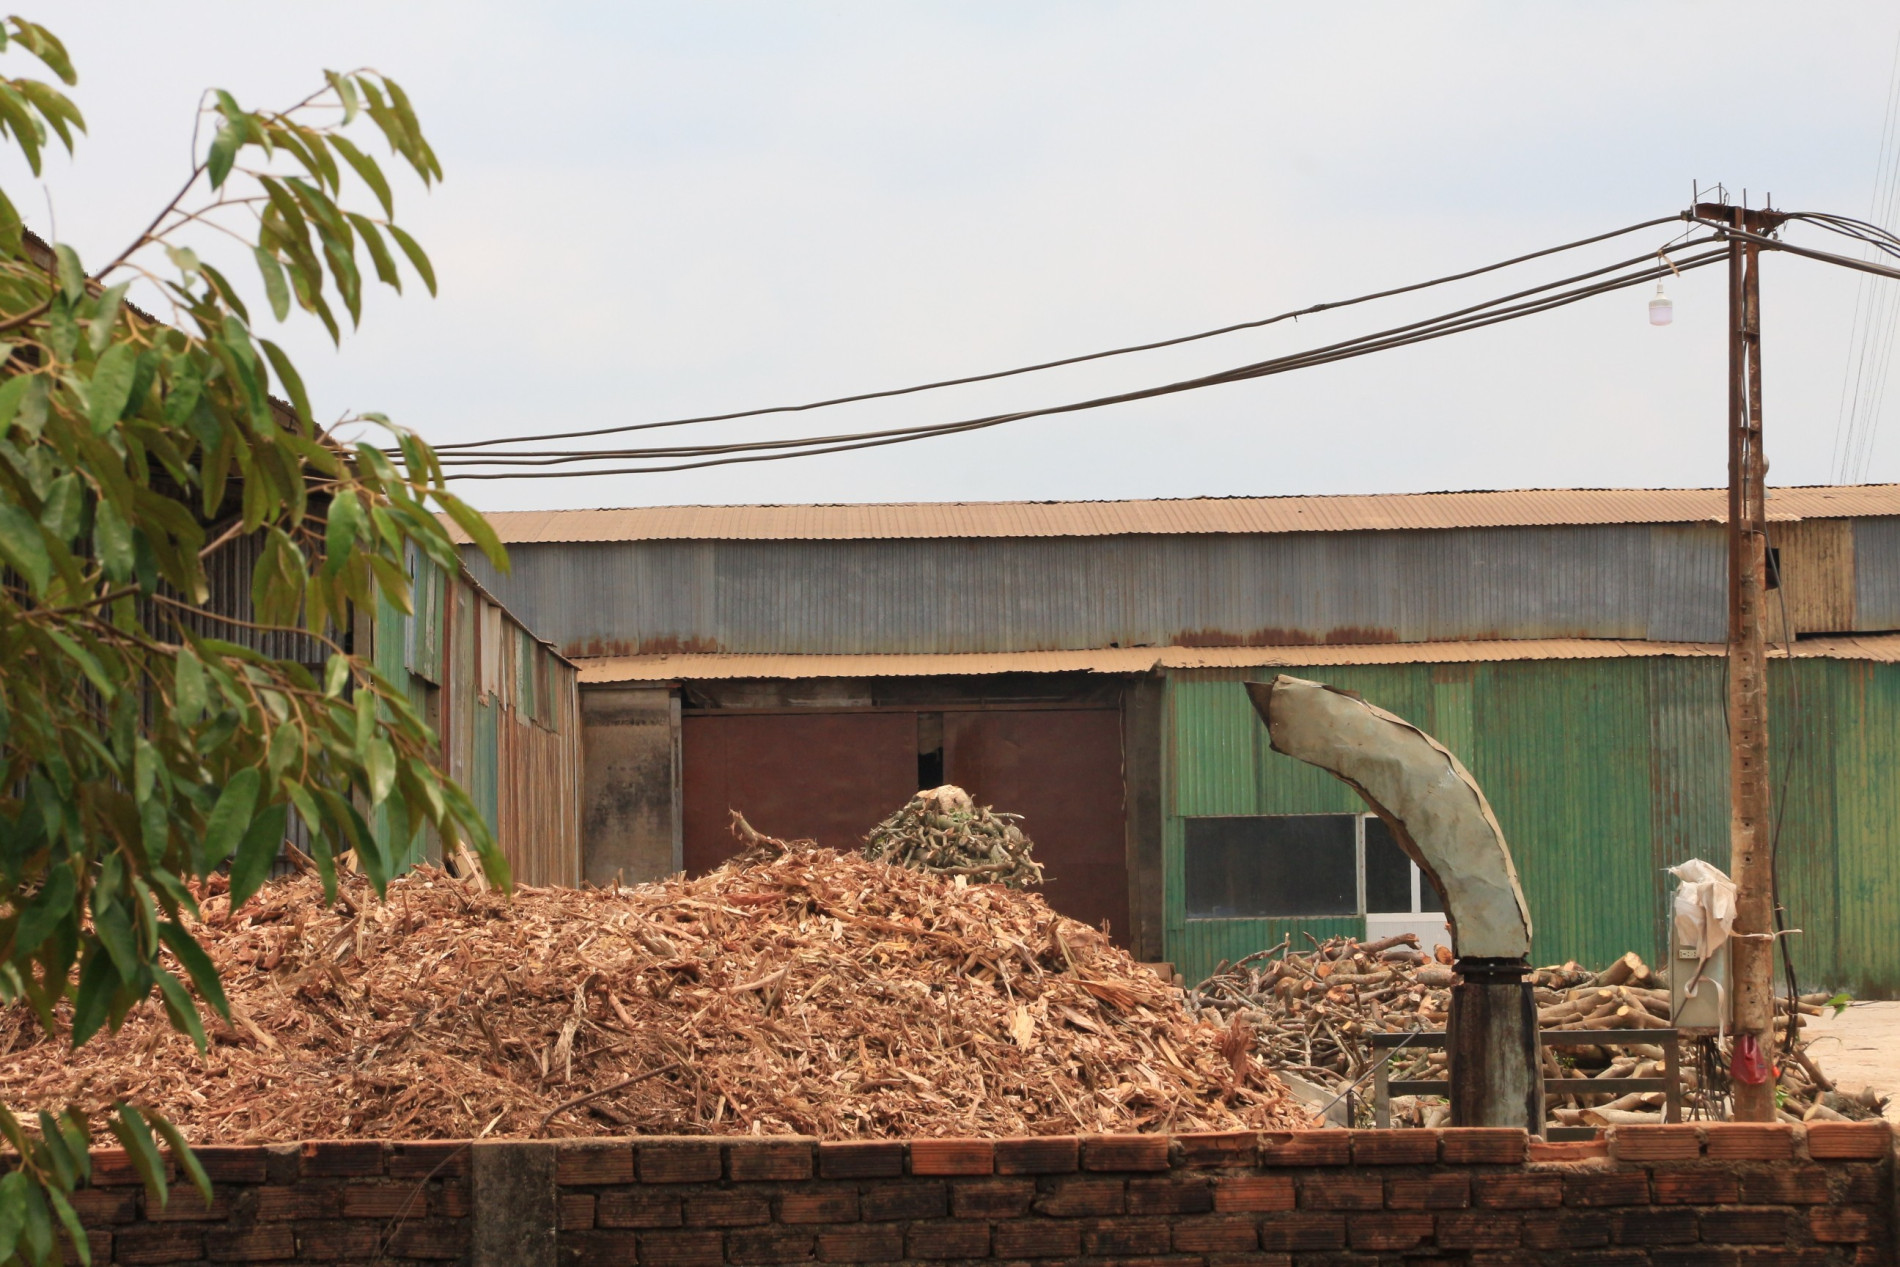 Môi trường - Cận cảnh nhà máy sản xuất viên nén gỗ gây ô nhiễm môi trường (Hình 7).